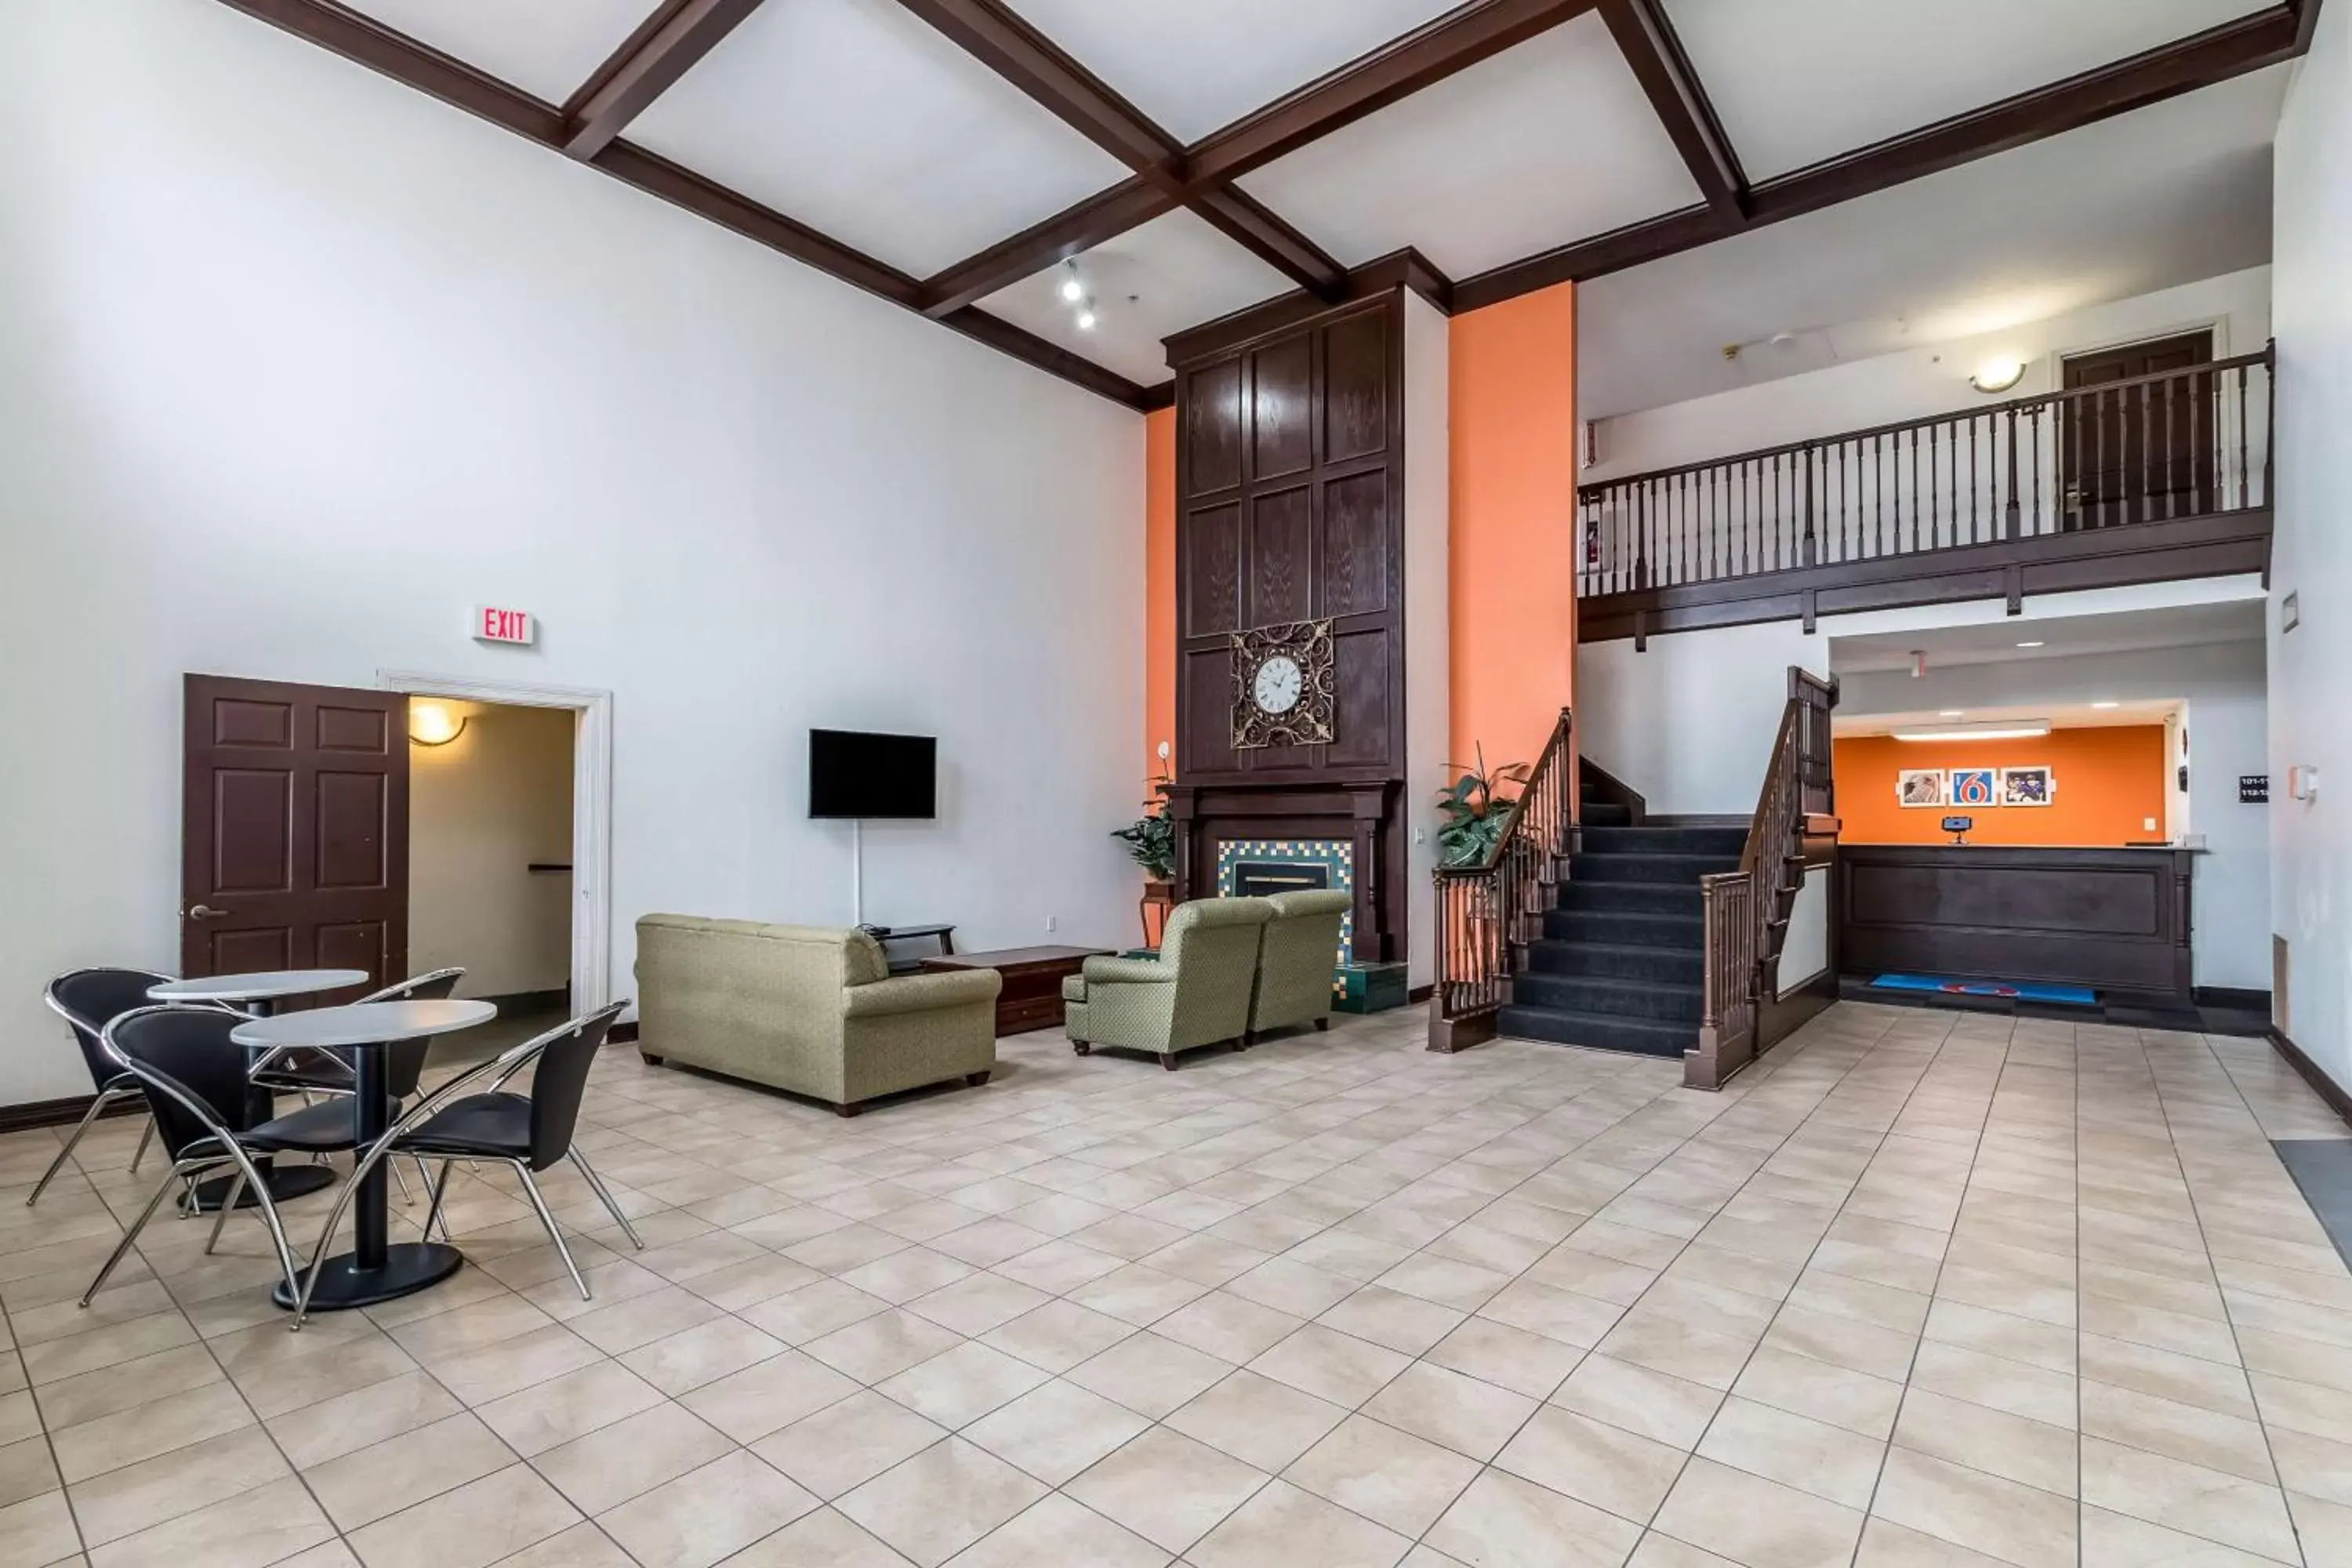 Lobby or reception in Motel 6-North Richland Hills, TX - NE Fort Worth